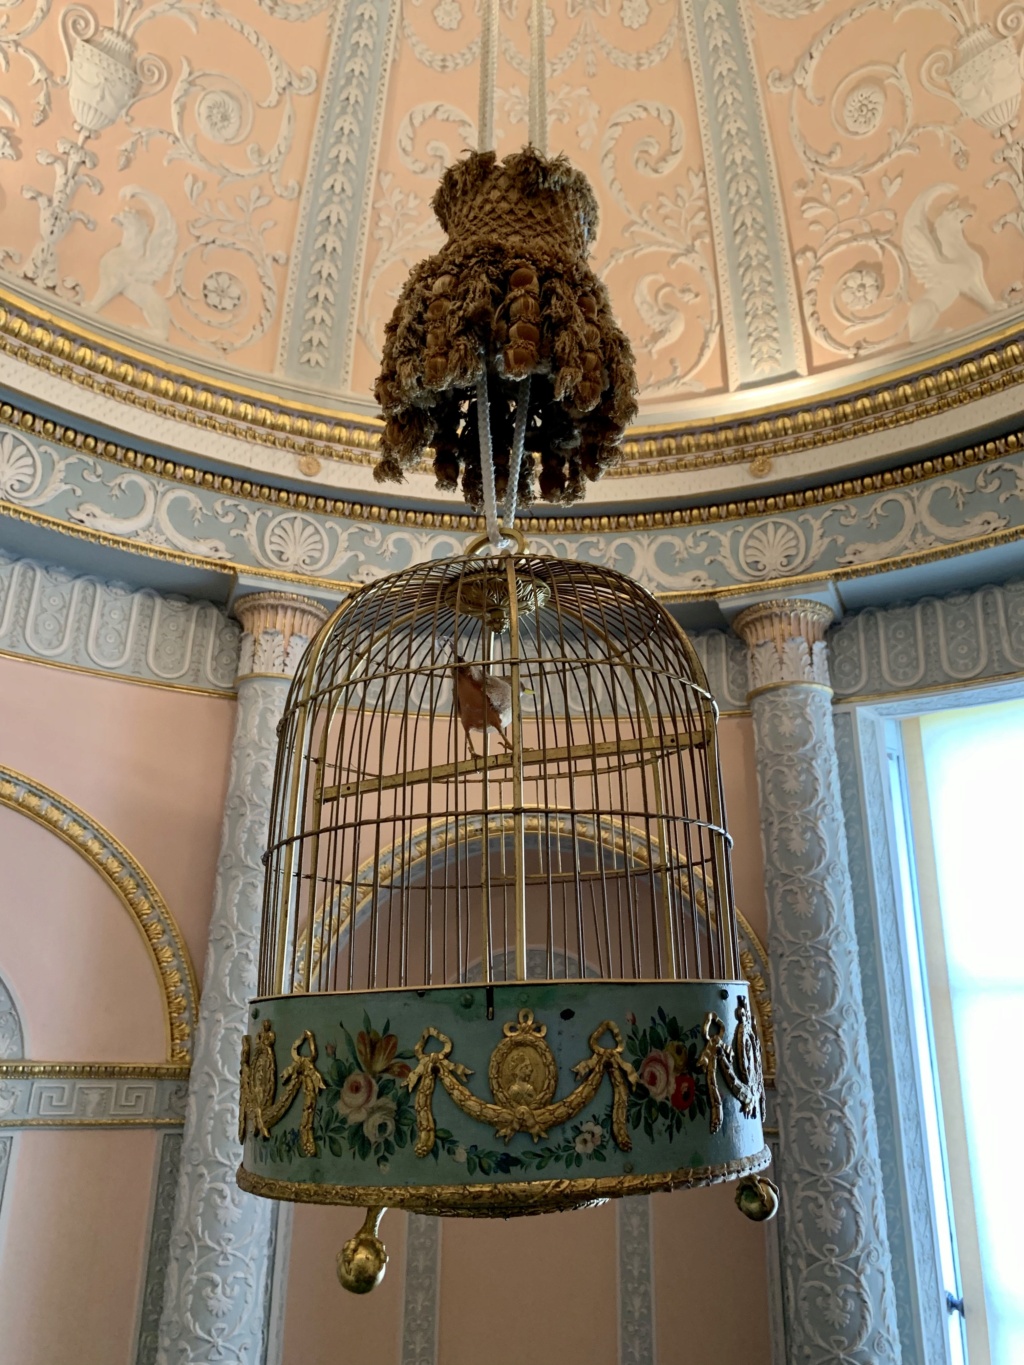 Les pendules cages et oiseaux automates du XVIIIe siècle - Page 2 F9e52510